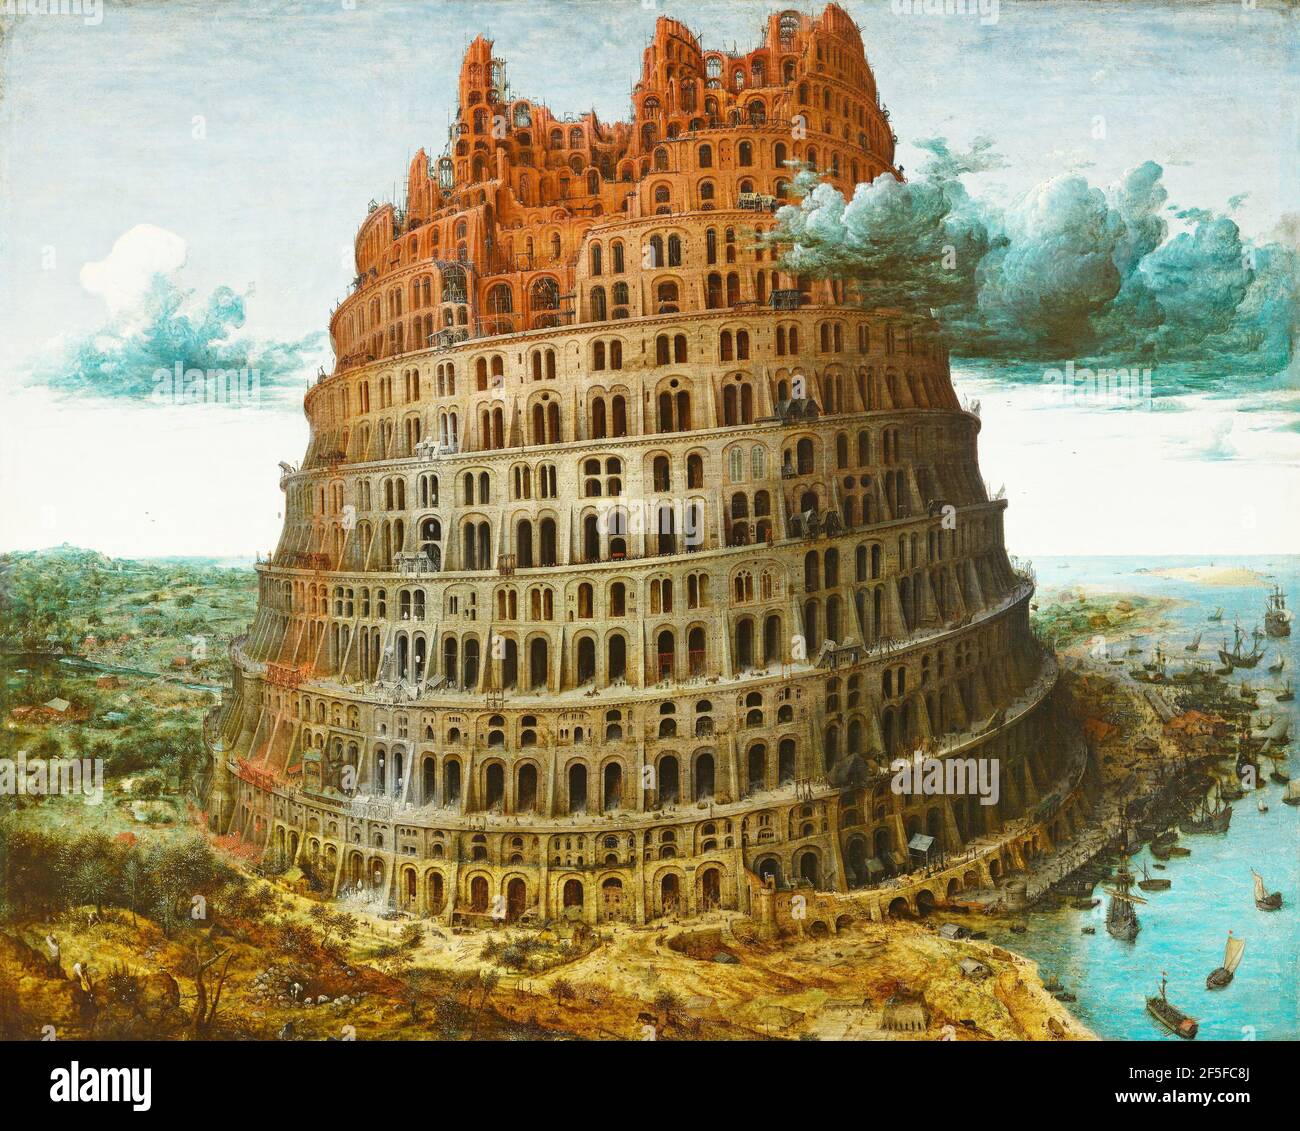 Titel: Der Turm zu Babel Ersteller: Pieter Bruegel der Ältere Datum: 1563 Medium: Öl auf Holz Größe: 114 x 155 cm Ort: Kunsthistorisches Museum, Wien Stockfoto